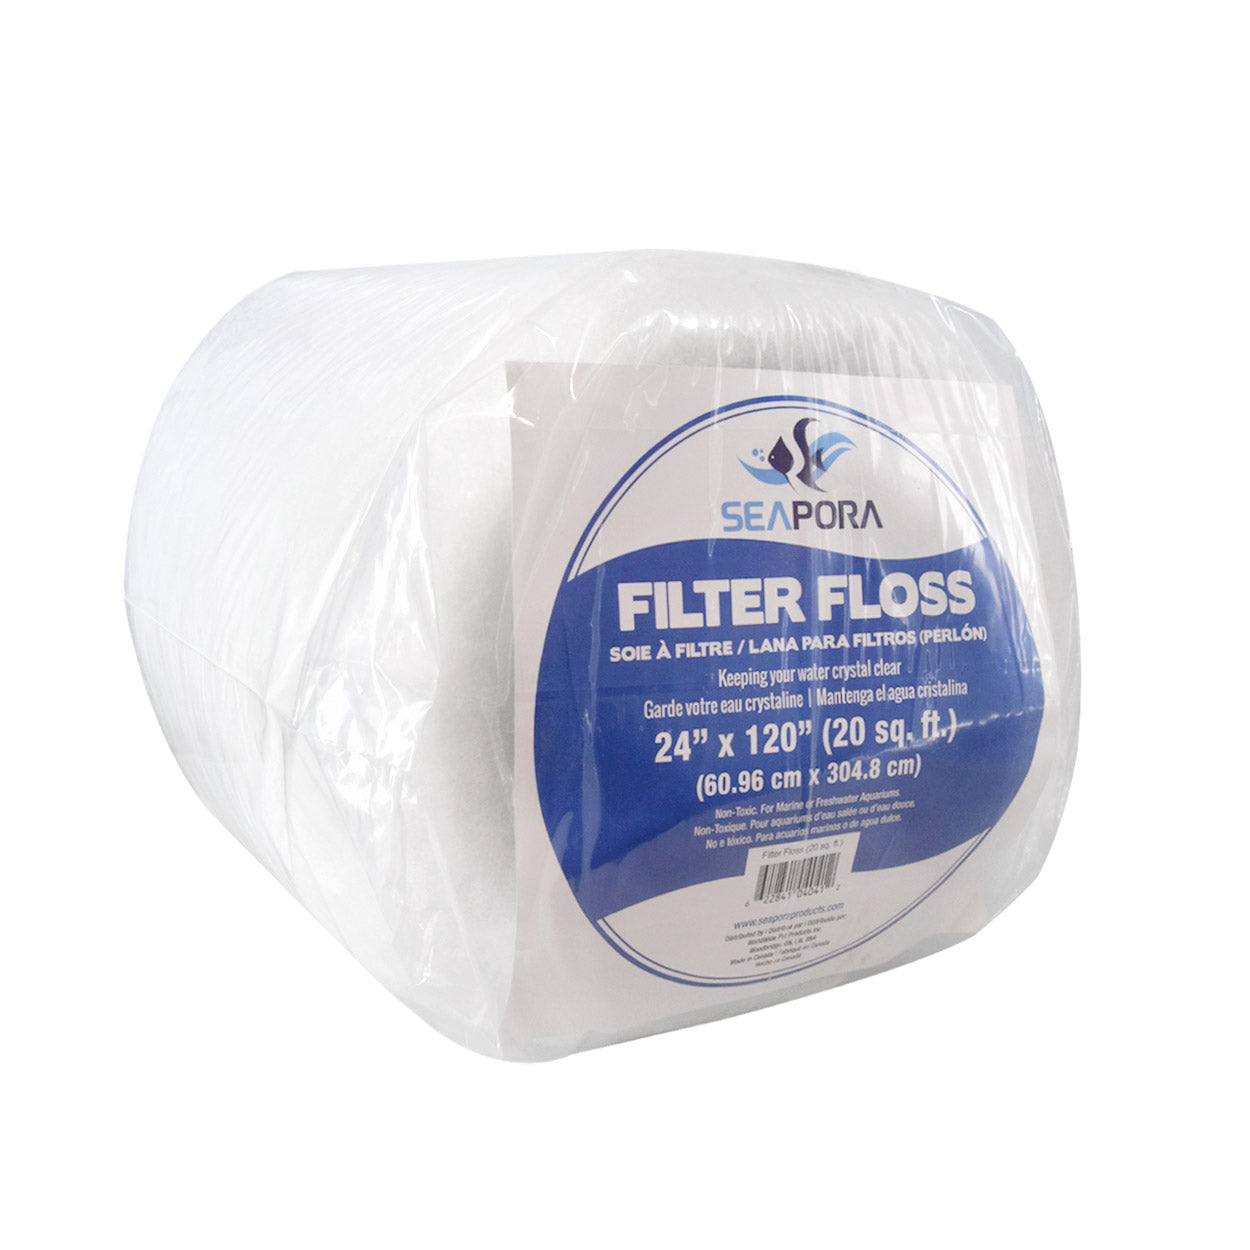 Filter Floss